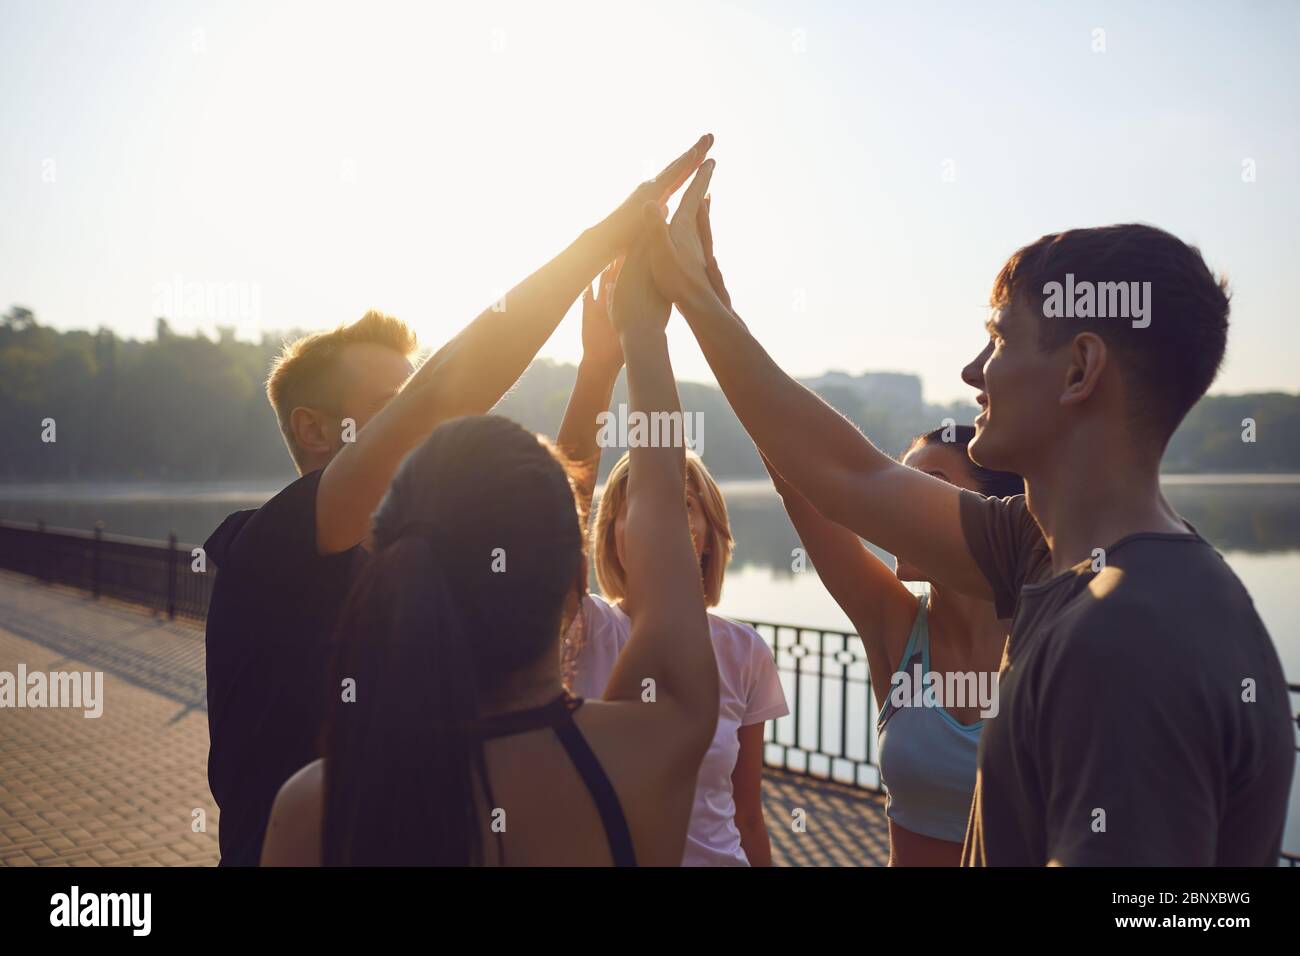 Eine Gruppe junger Menschen in Sportbekleidung legte sich die Hände zusammen, während sie morgens im Morgengrauen in einem Park standen. Ein Team von Sportlern trainiert zusammen. Stockfoto